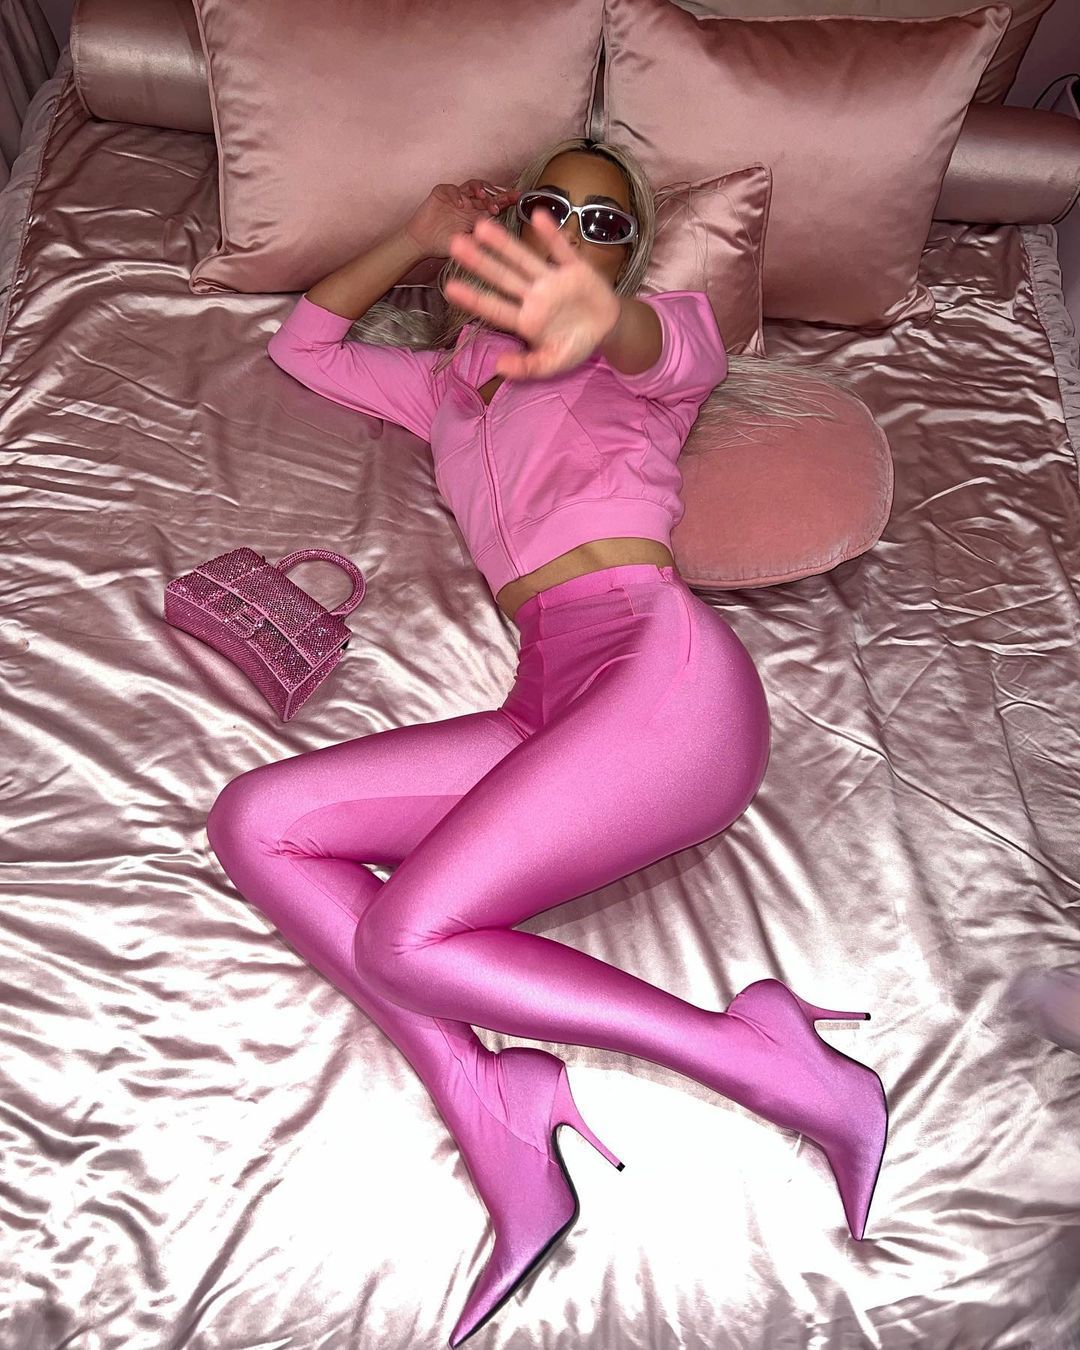 Gaya Seksi Kim Kardashian Pakai Pink, Foto di Ranjang!